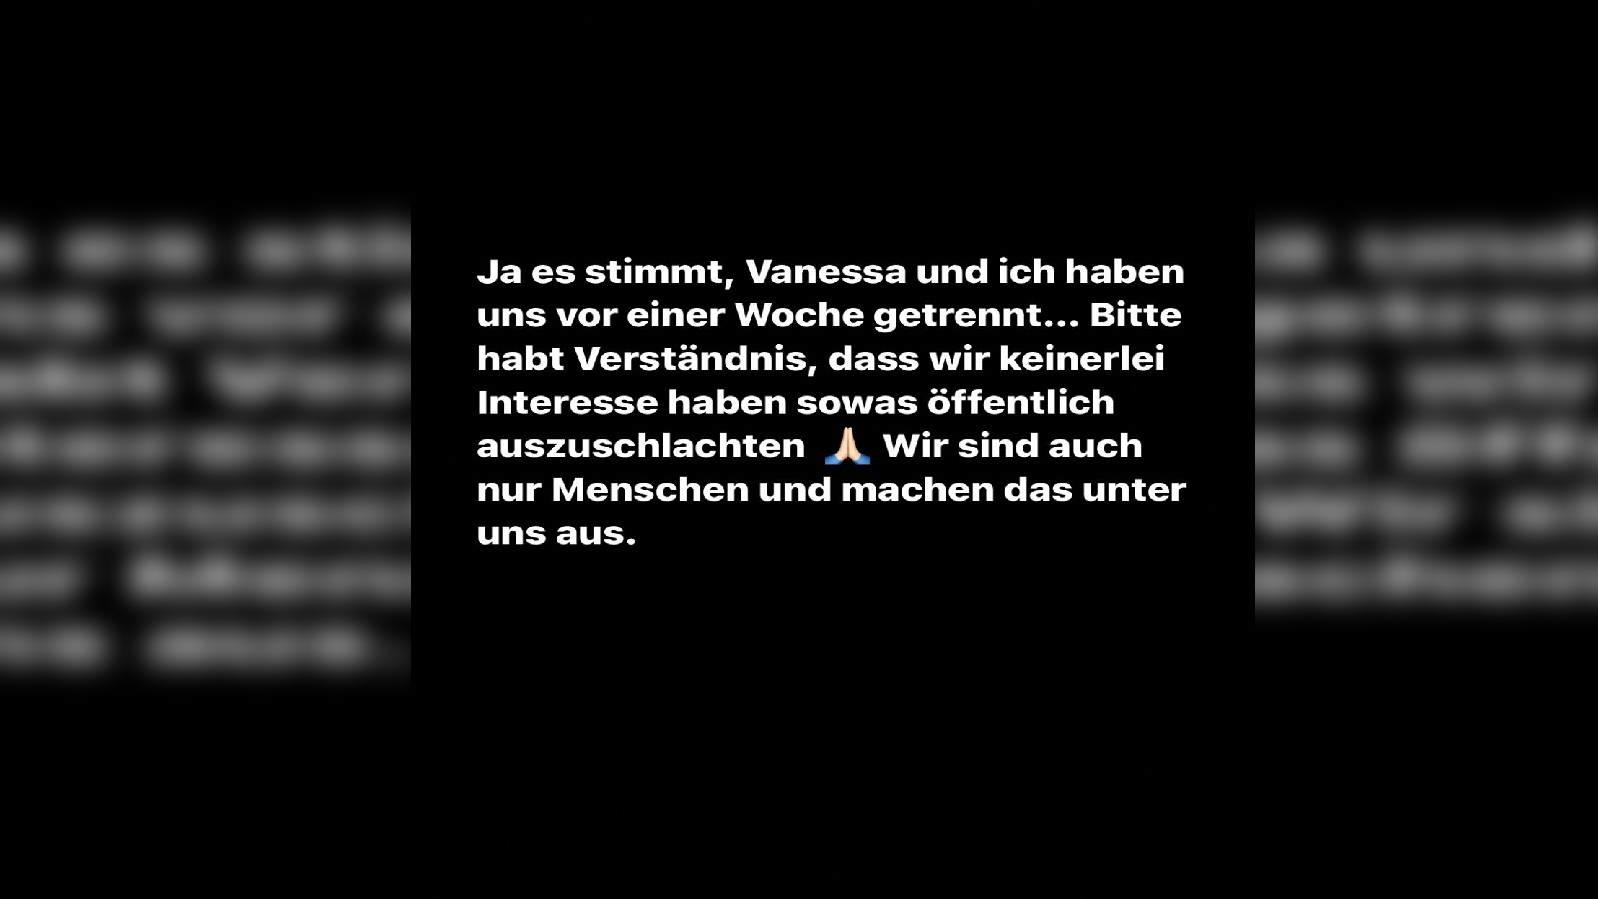 Raúl Richter bestätigt Liebes-Aus mit Vanessa Schmitt in seiner Instagram-Story.